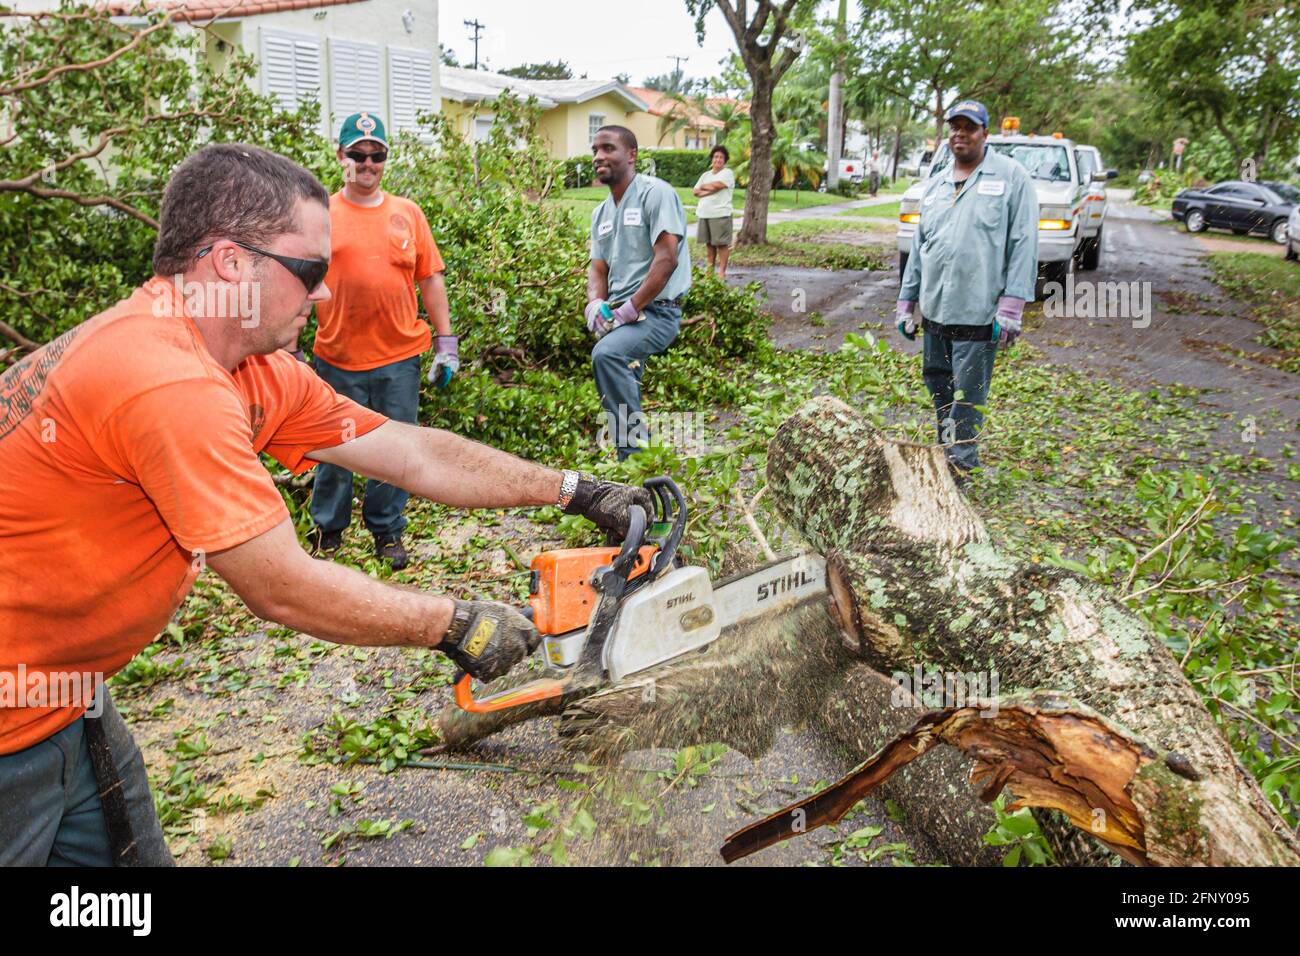 Miami Florida,Coral Gables Huracán Katrina daño,trabajadores de la ciudad aserrando árboles caídos sierra portátil,hombres hispanos negros, Foto de stock